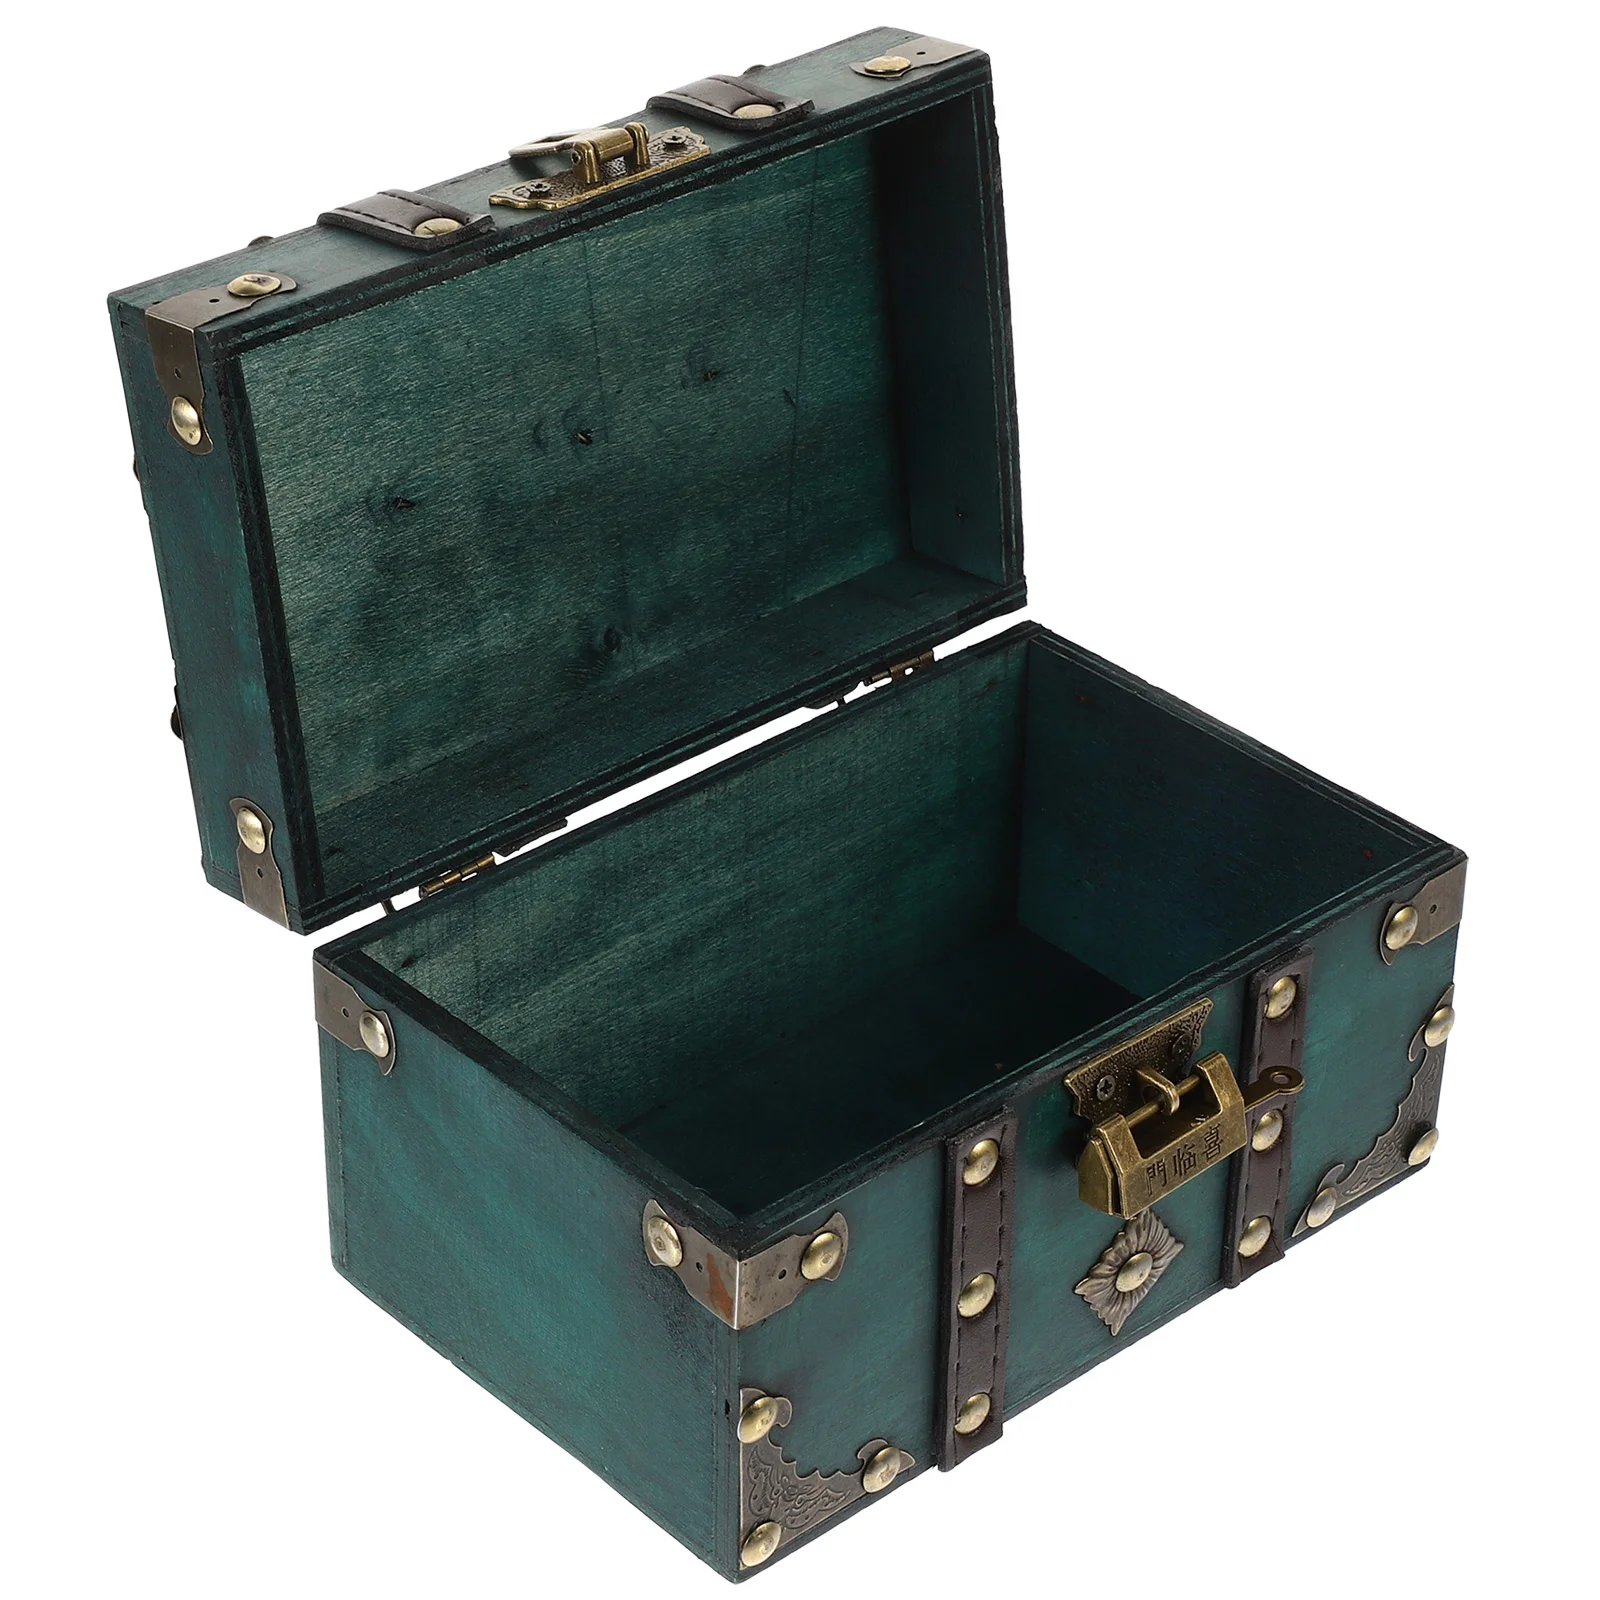 

Pirate Treasure Wood Coin Bank Case Piggy Retro Trinket Wooden Jewelry Storage Organizer Vintage Money